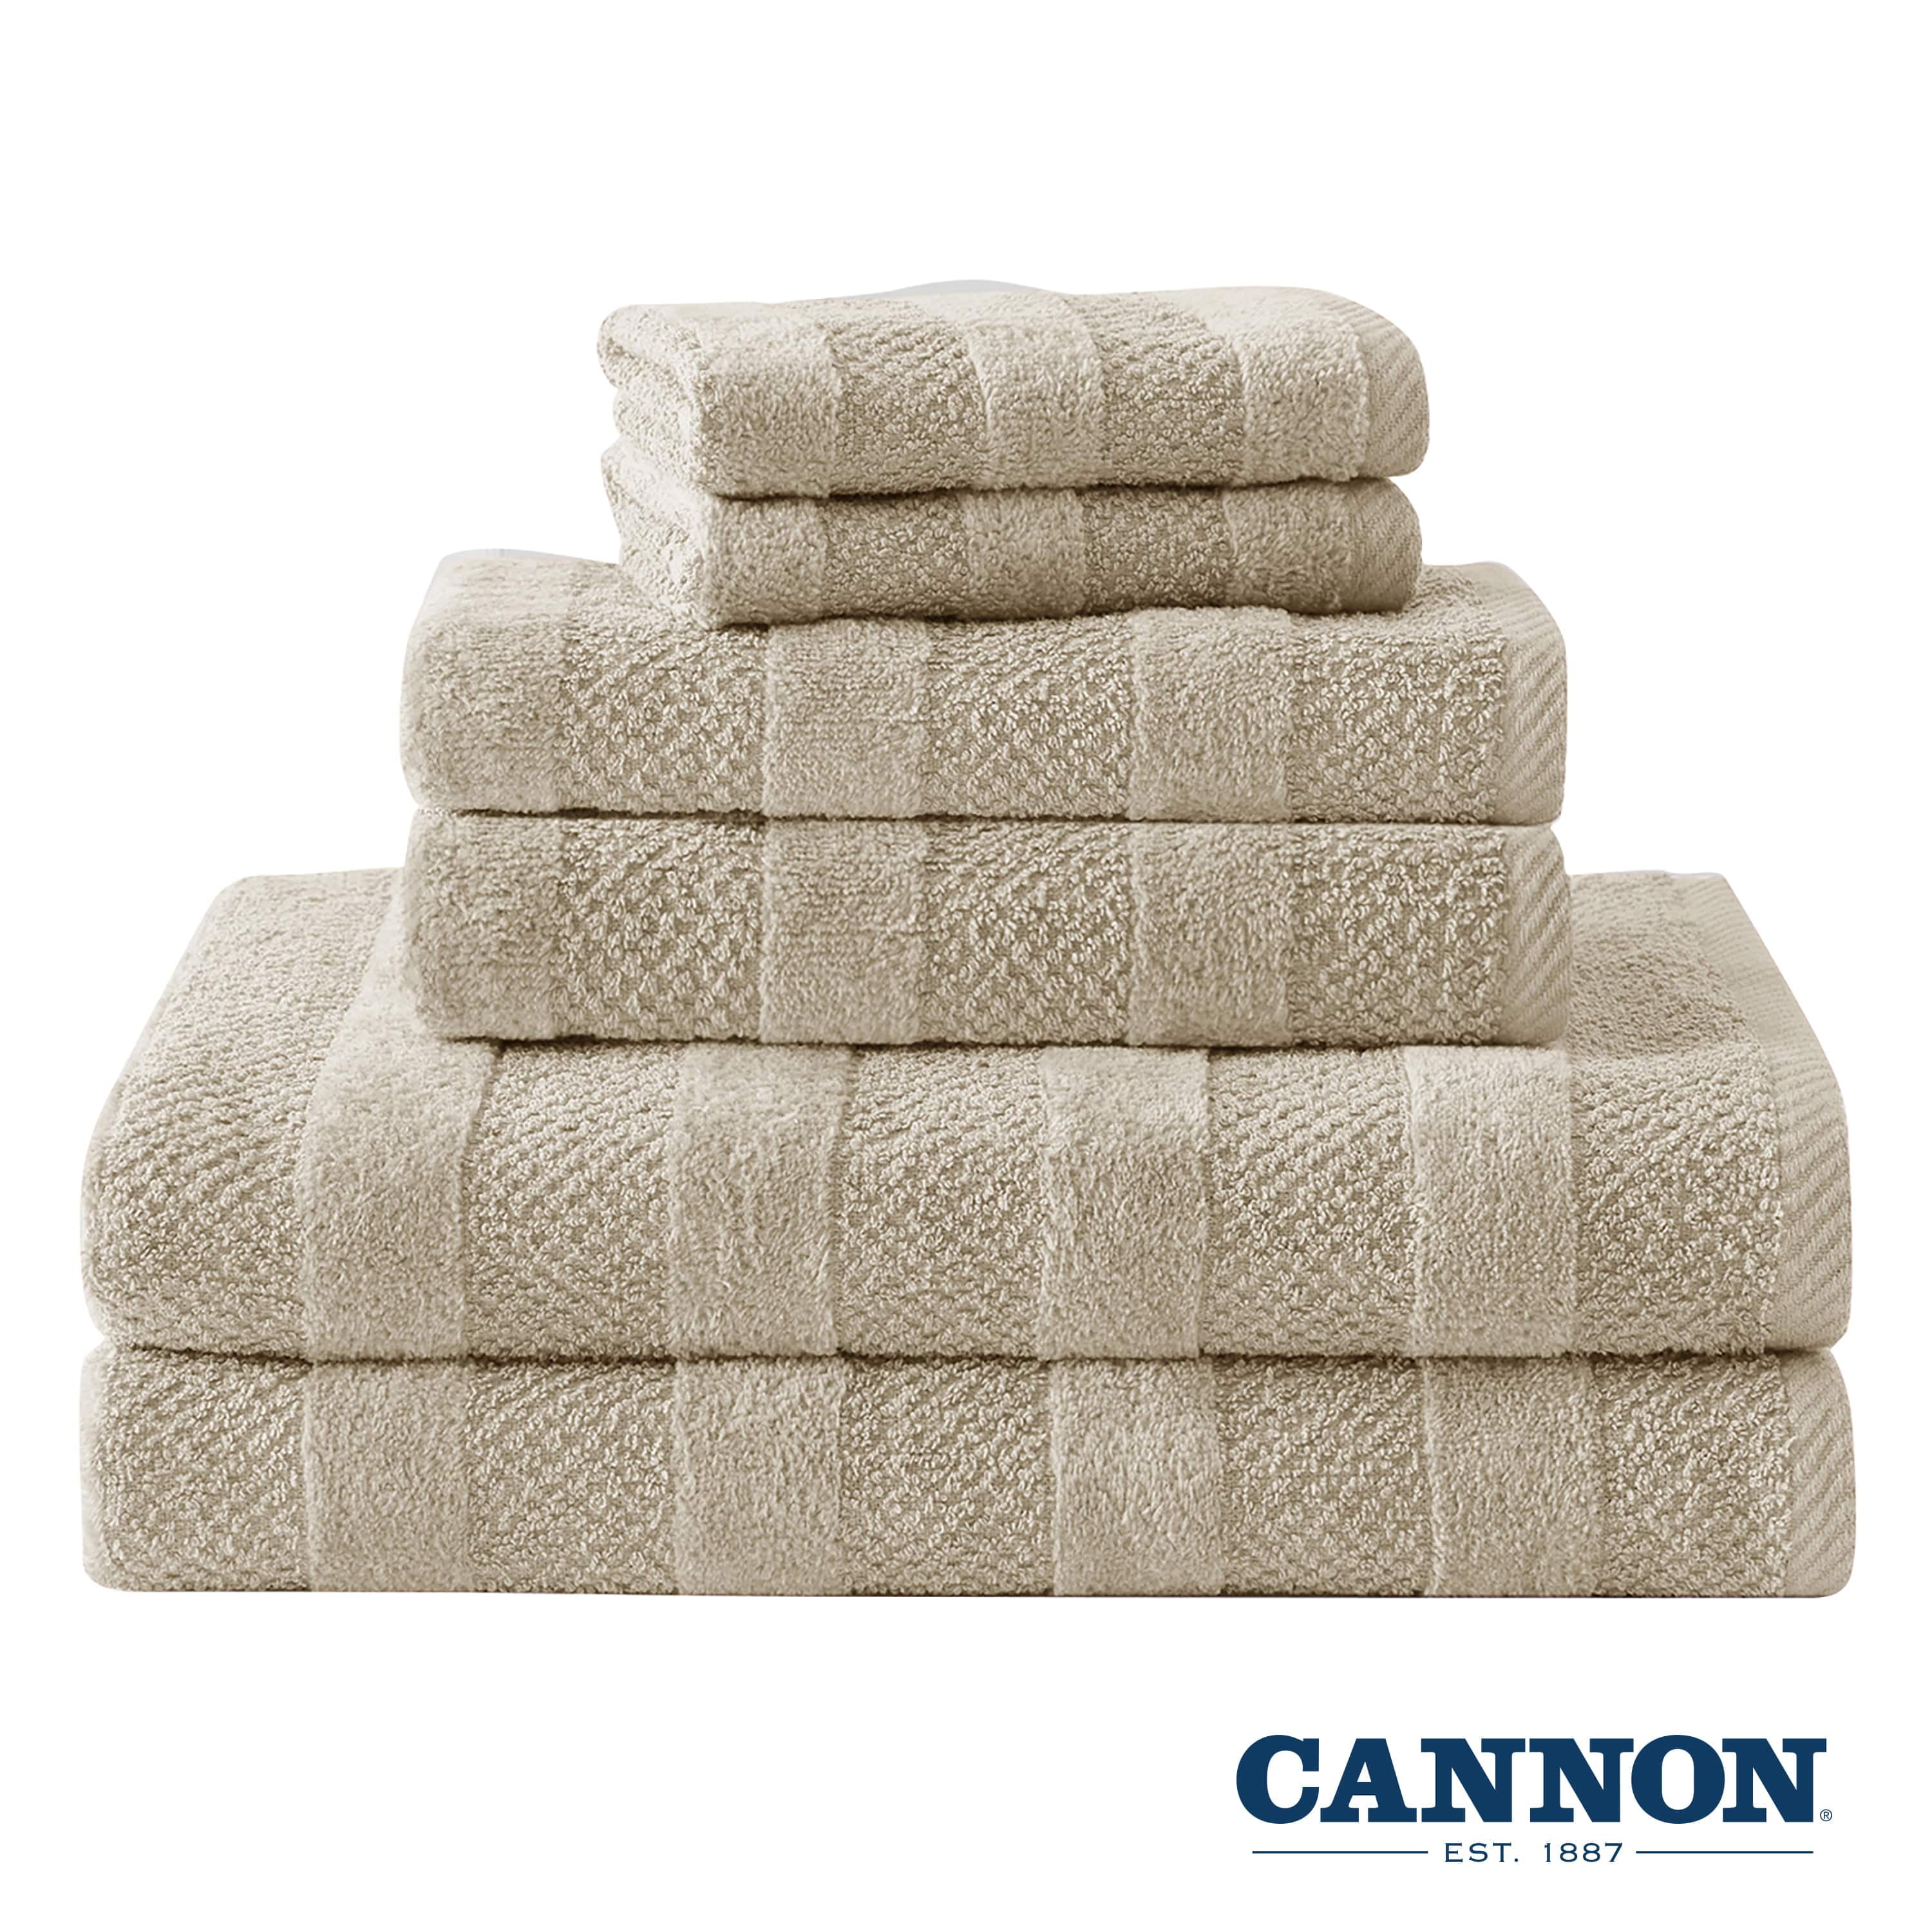 Afeef Online. Cannon Cotton Bath Towel 70 x 140 cm